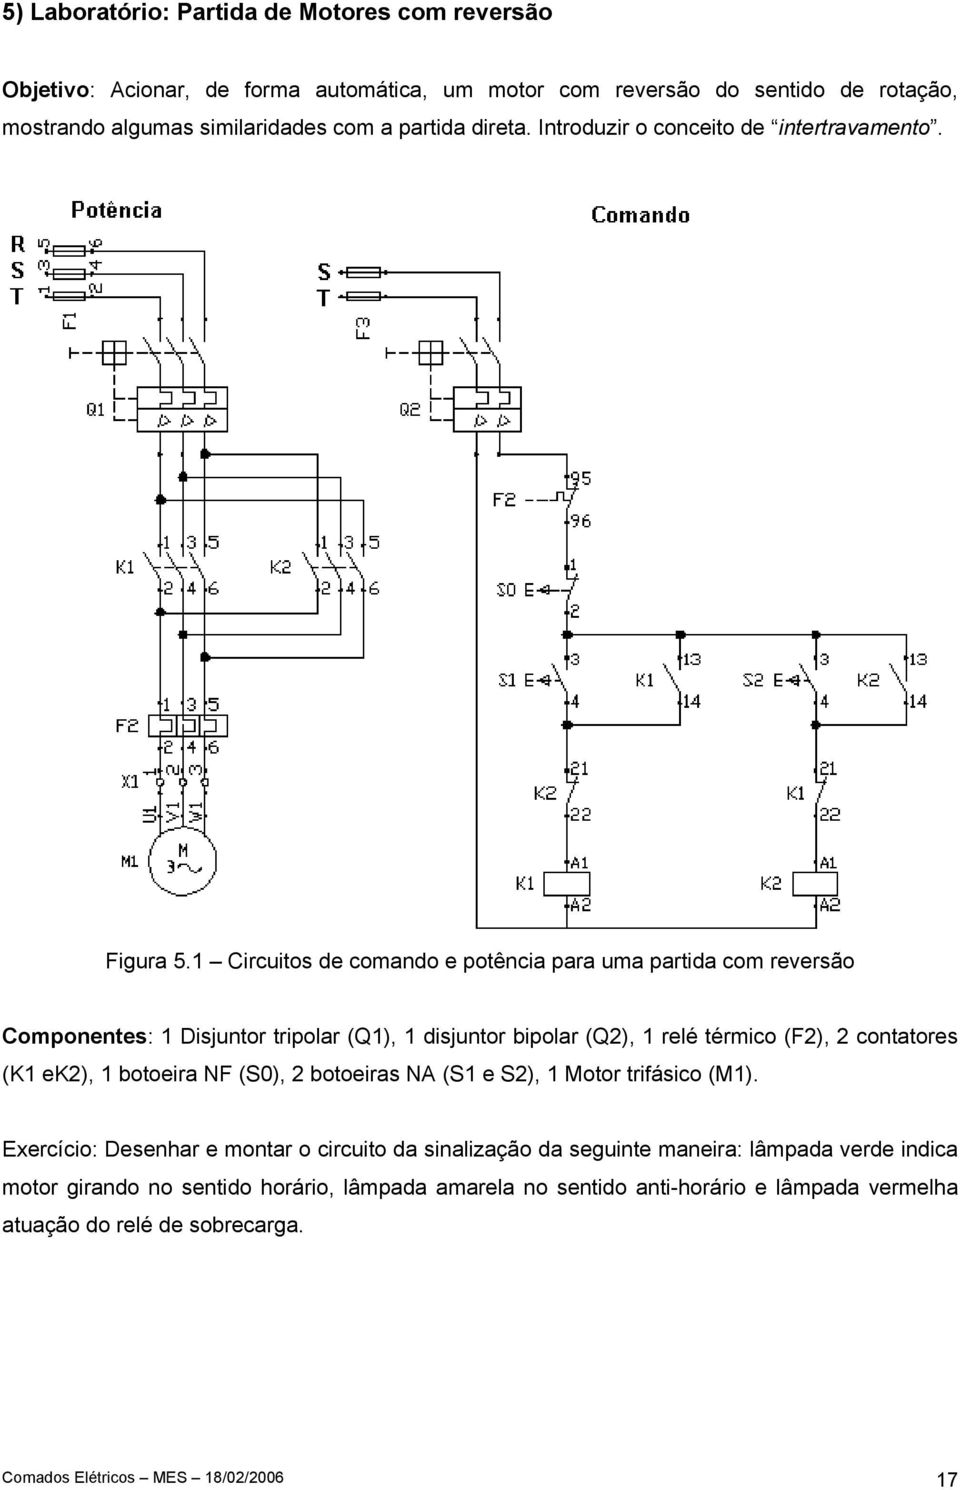 1 Circuitos de comando e potência para uma partida com reversão Componentes: 1 Disjuntor tripolar (Q1), 1 disjuntor bipolar (Q2), 1 relé térmico (F2), 2 contatores (K1 ek2), 1 botoeira